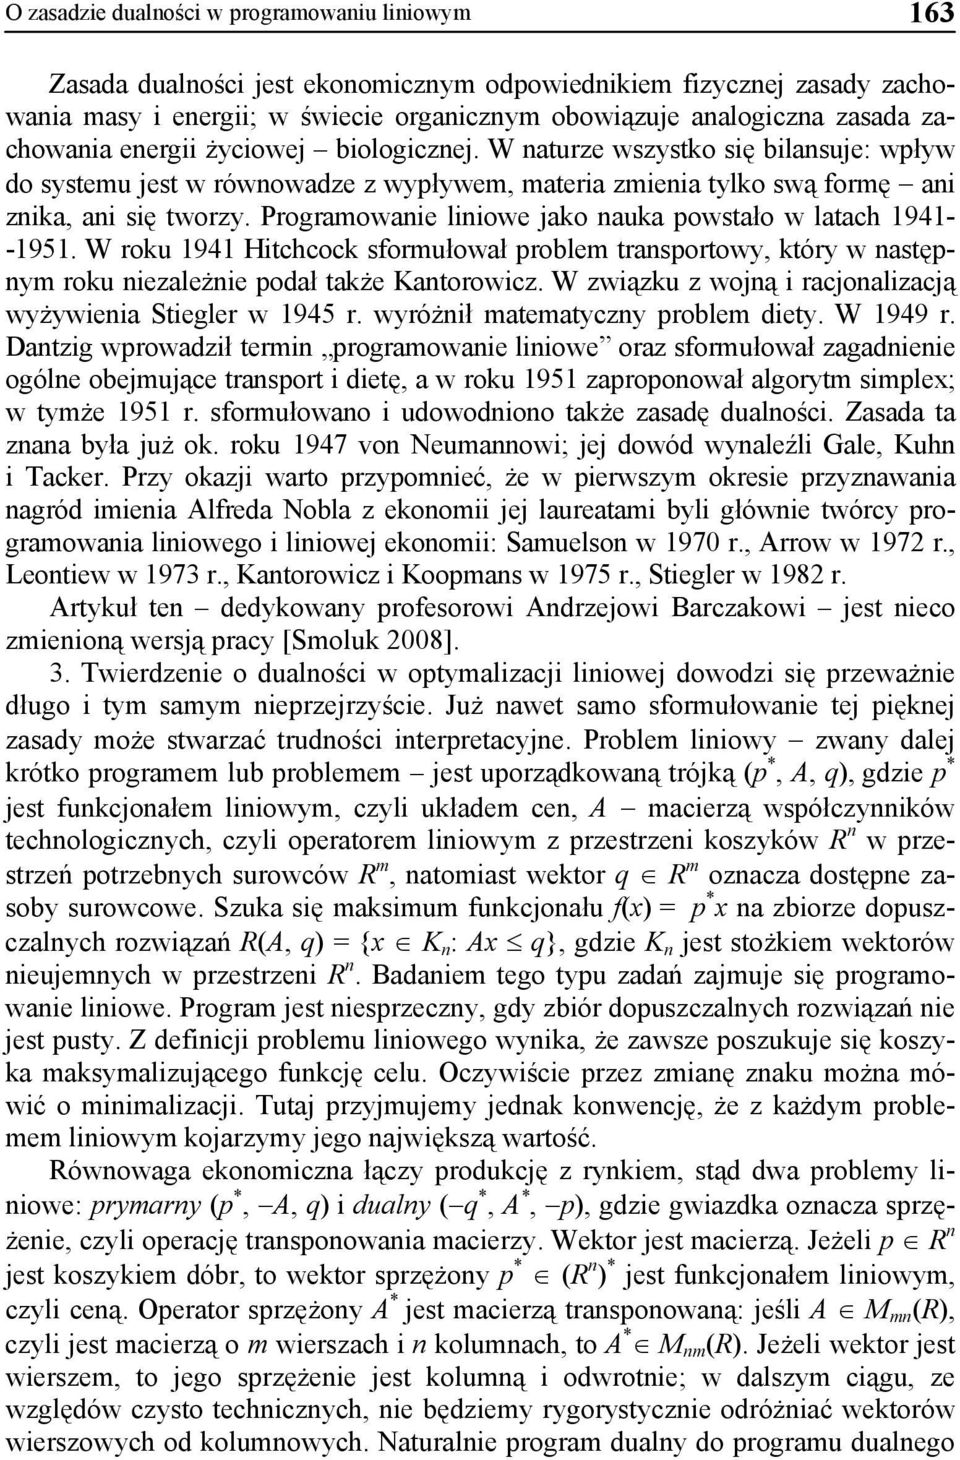 Programowanie liniowe jako nauka powstało w latach 1941- -1951. W roku 1941 Hitchcock sformułował problem transportowy, który w następnym roku niezależnie podał także Kantorowicz.